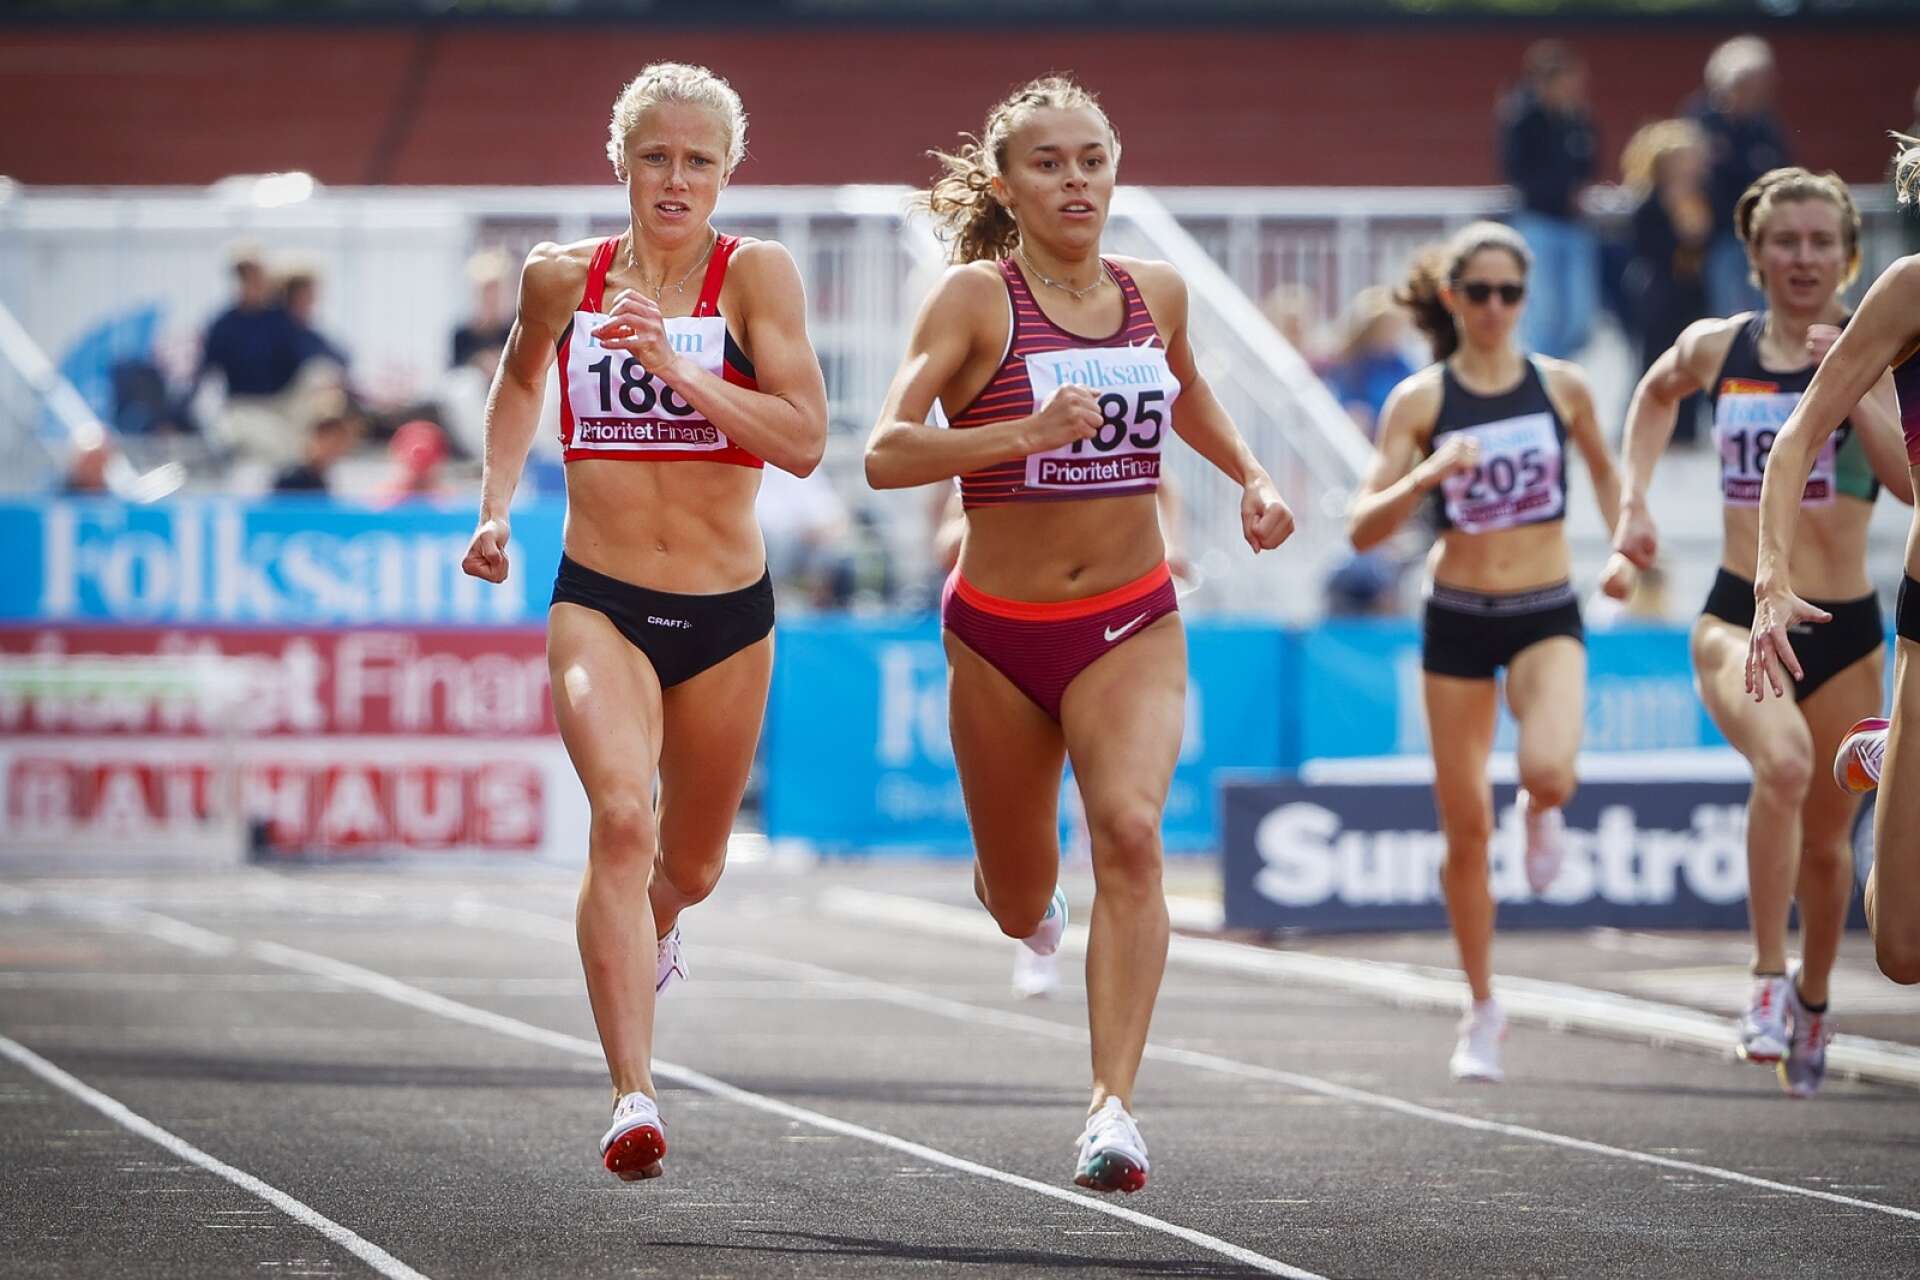 IF Götas Lova Perman satte nytt personbästa på 800 meter som vanns av Wilma Nielsen (till höger) från Örgryte IS.